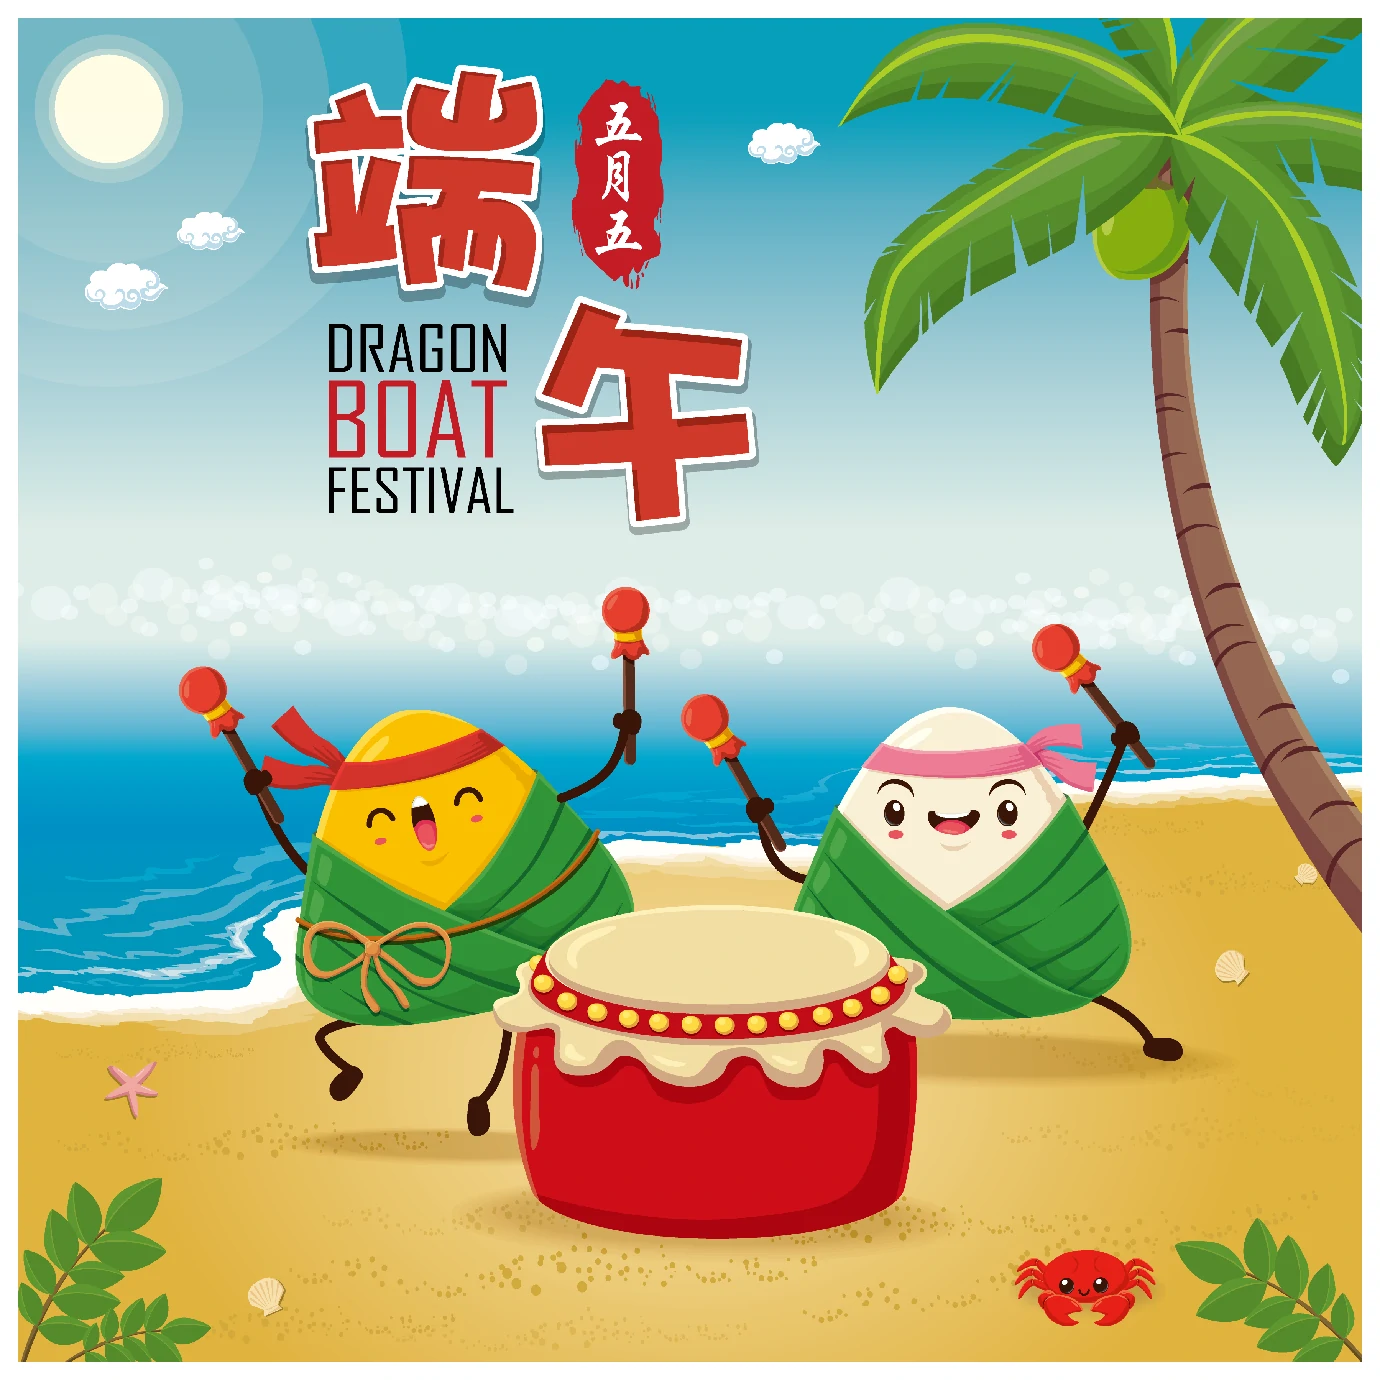 中国传统节日卡通手绘端午节赛龙舟粽子插画海报AI矢量设计素材【075】